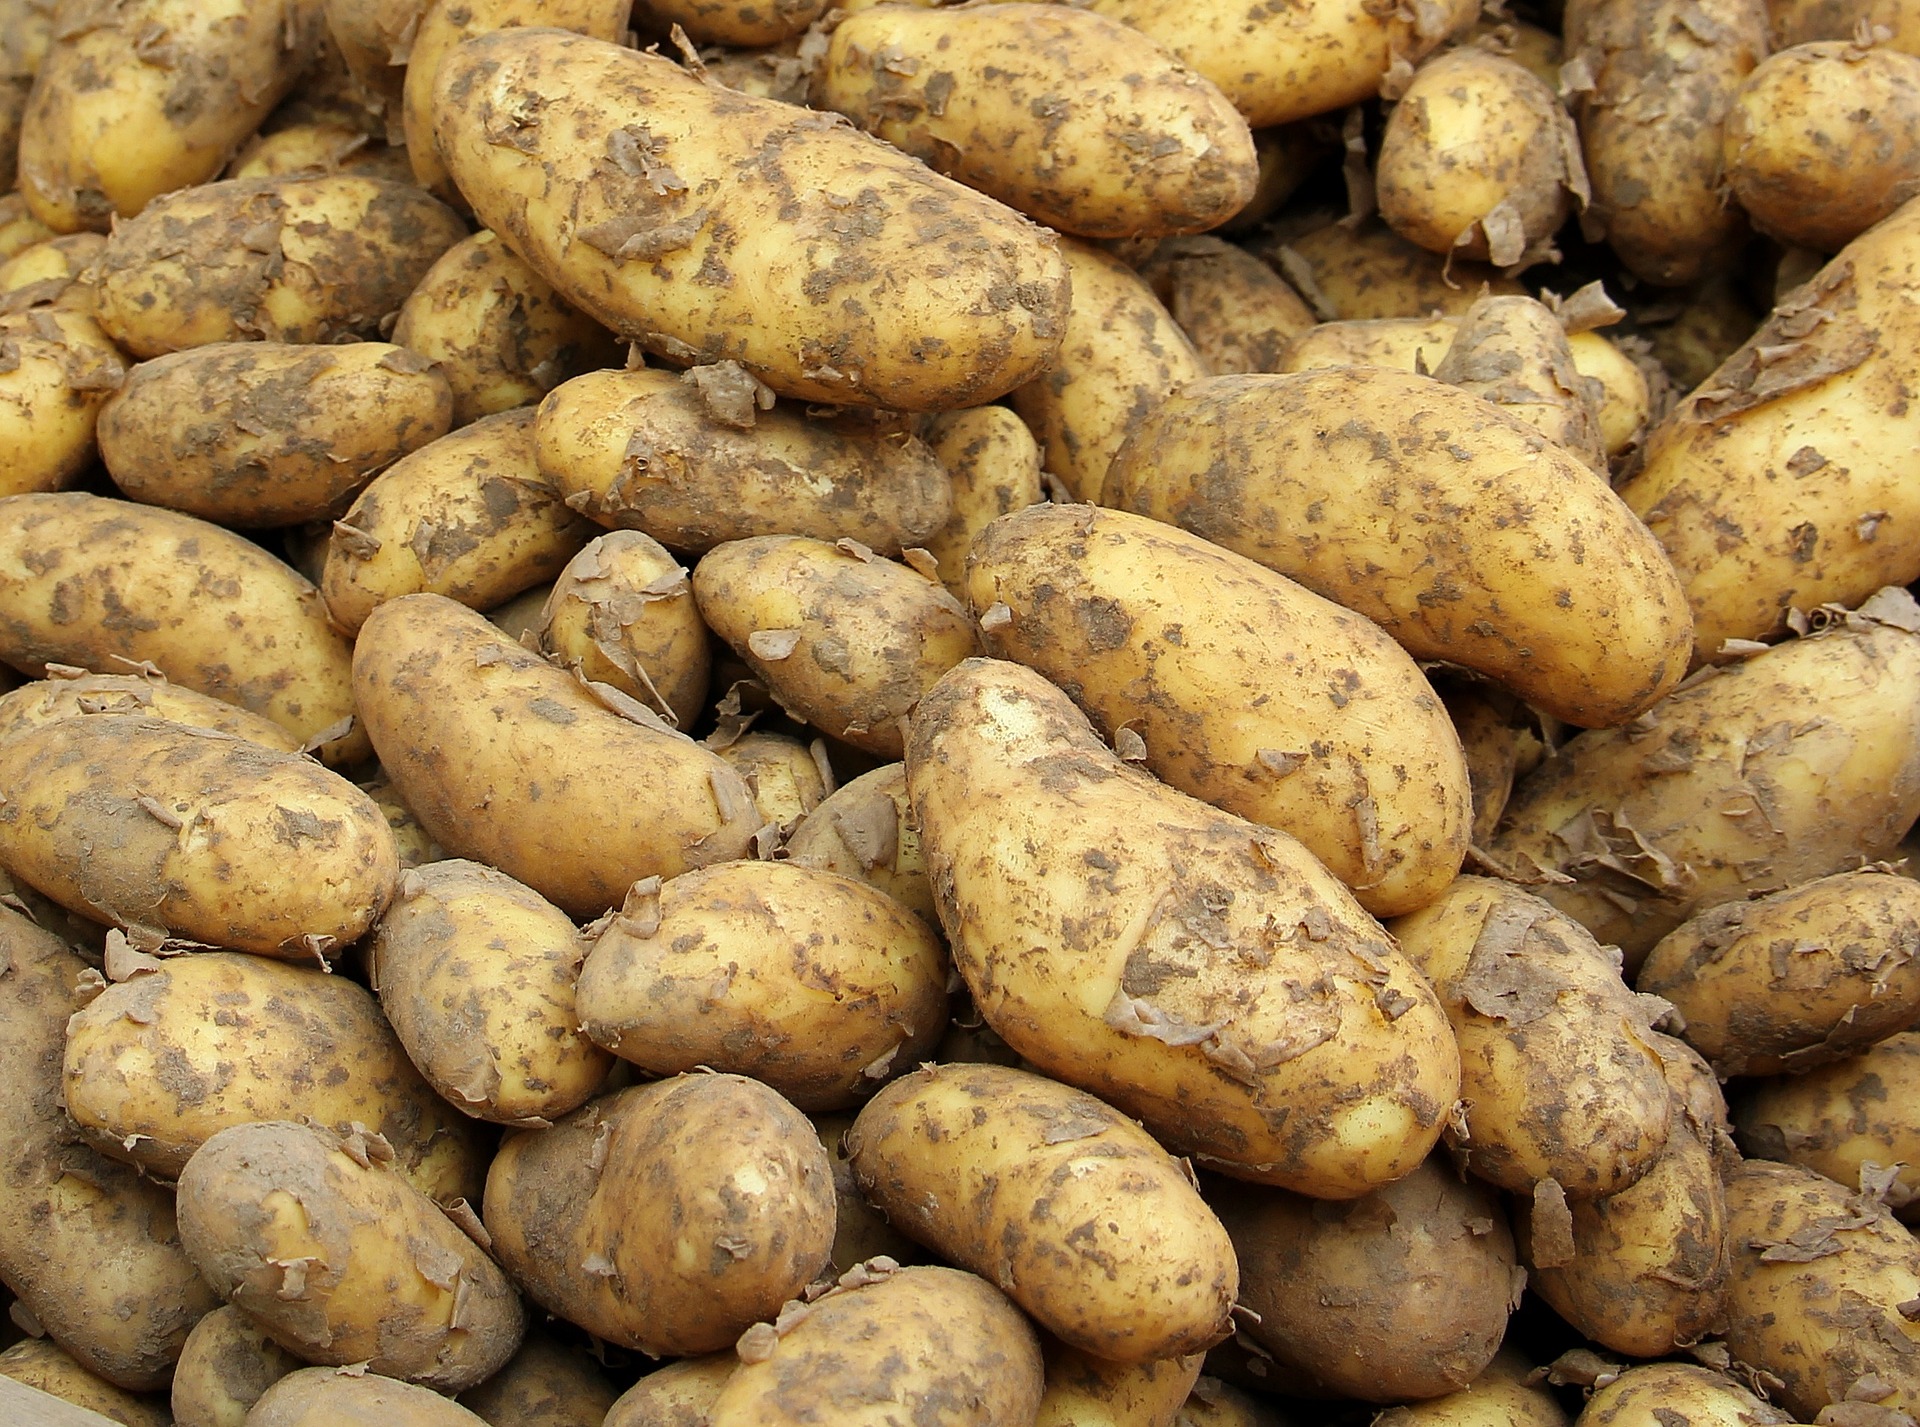 ziemniaki są obecne na europejskich stołach od lat